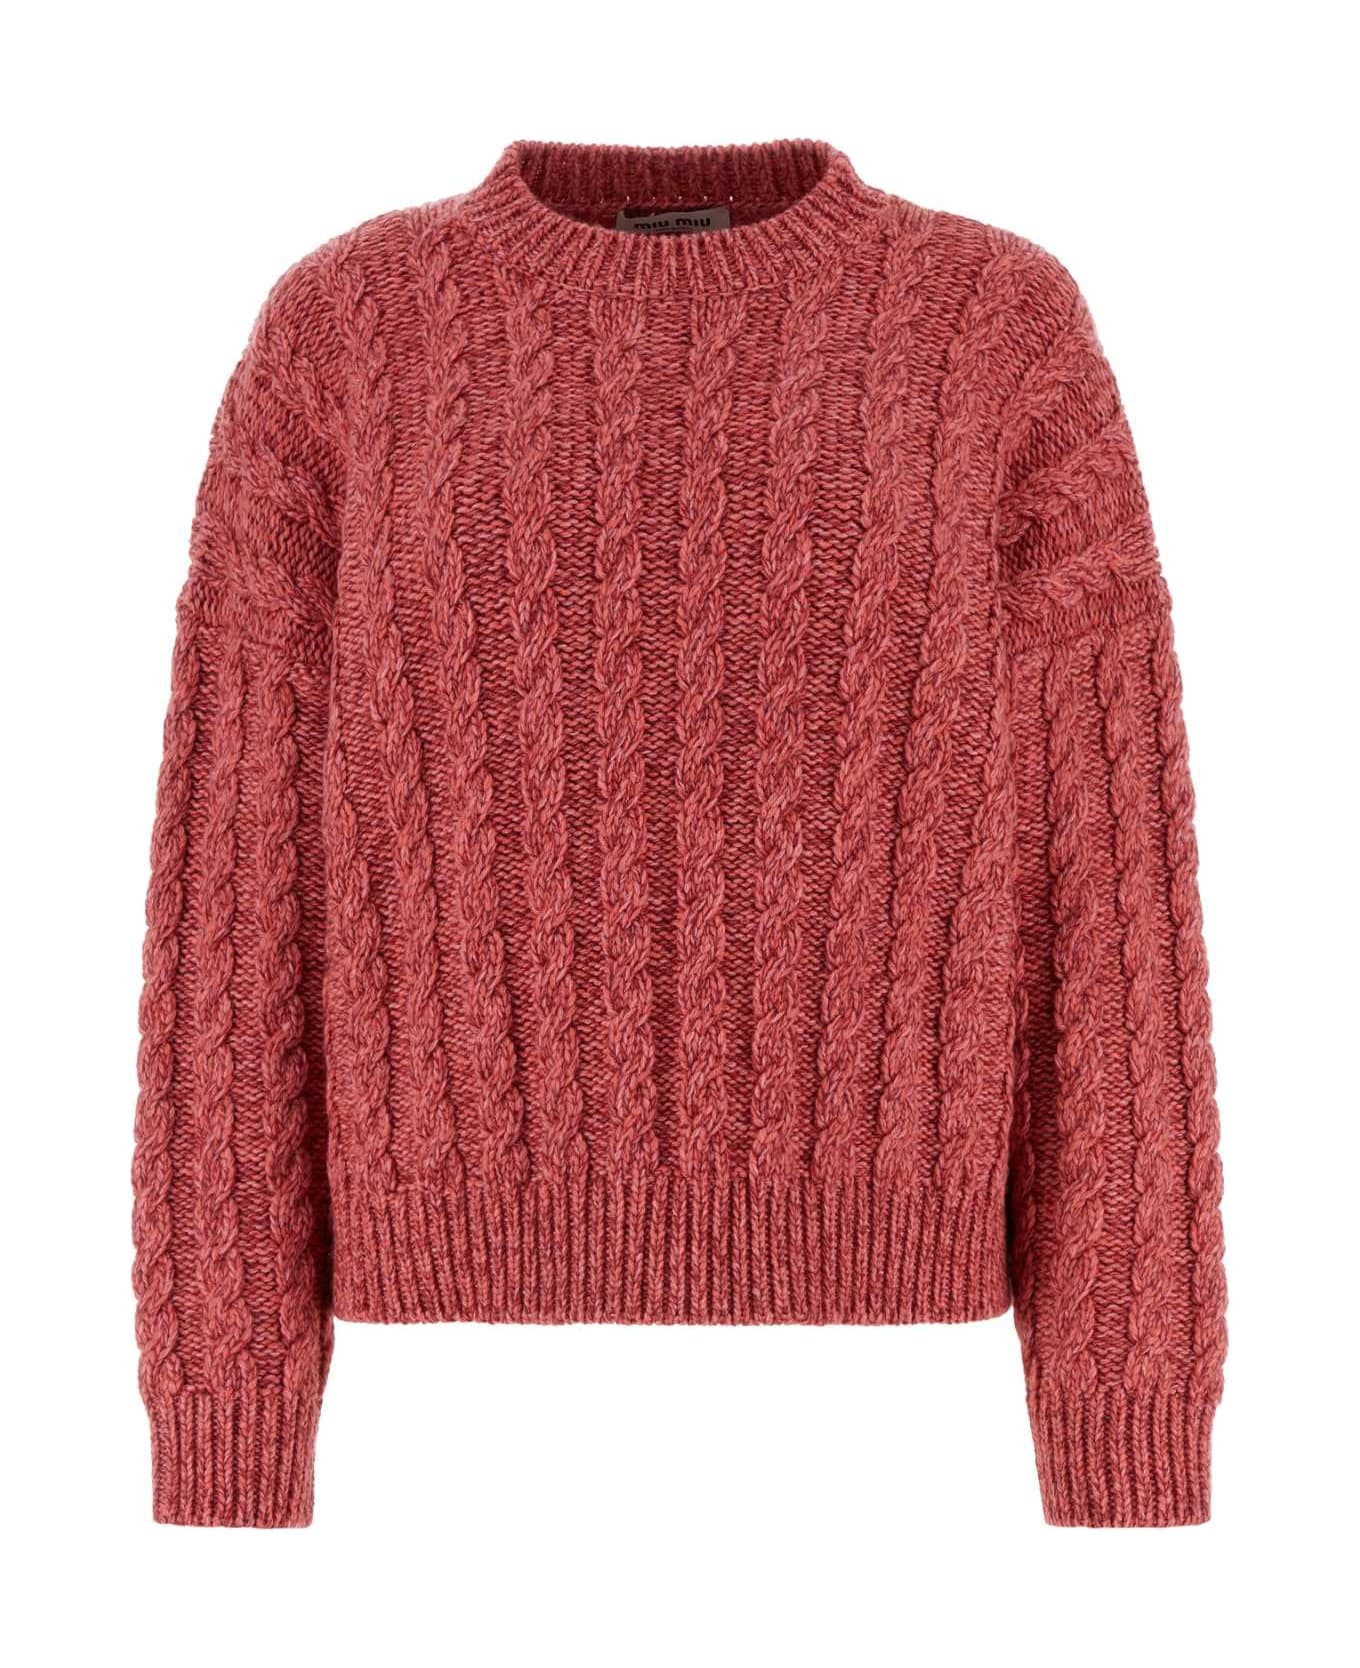 Miu Miu Dark Pink Cashmere Blend Sweater - ROSA